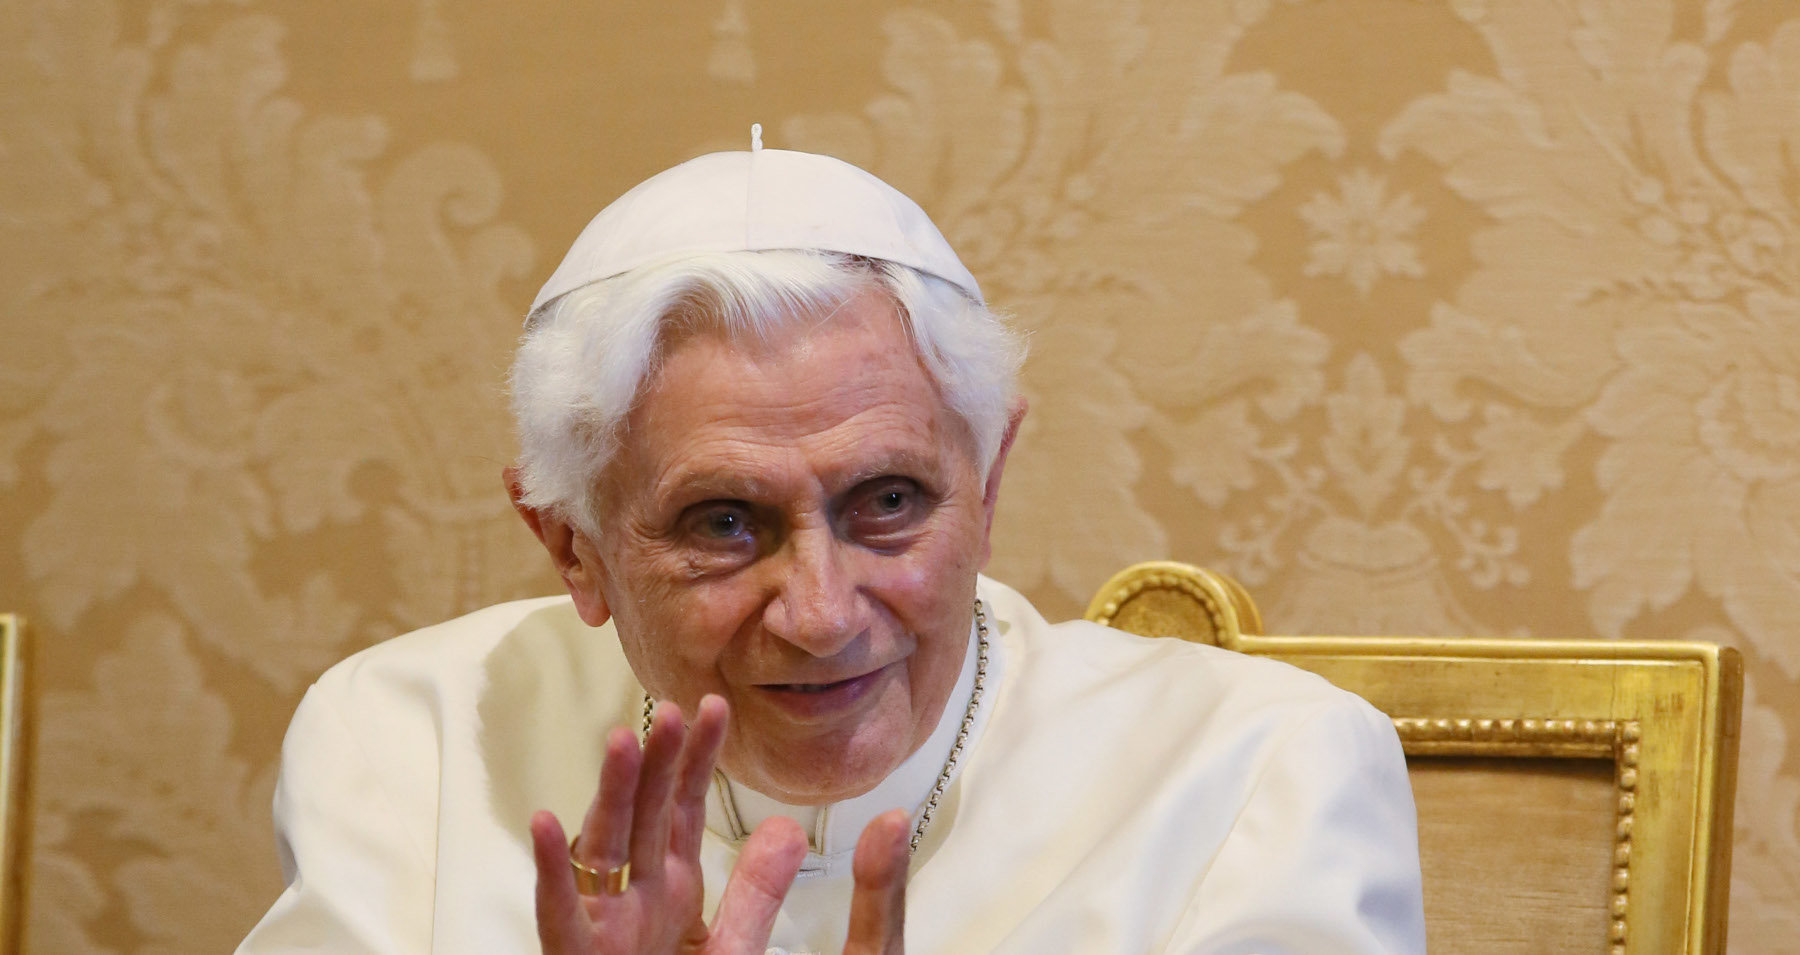 Βενέδικτος XVI: Ανακυβίσθηση από τον πρώην Πάπα – Παραδέχτηκε ότι είχε γνώση για έναν παιδεραστή ιερέα